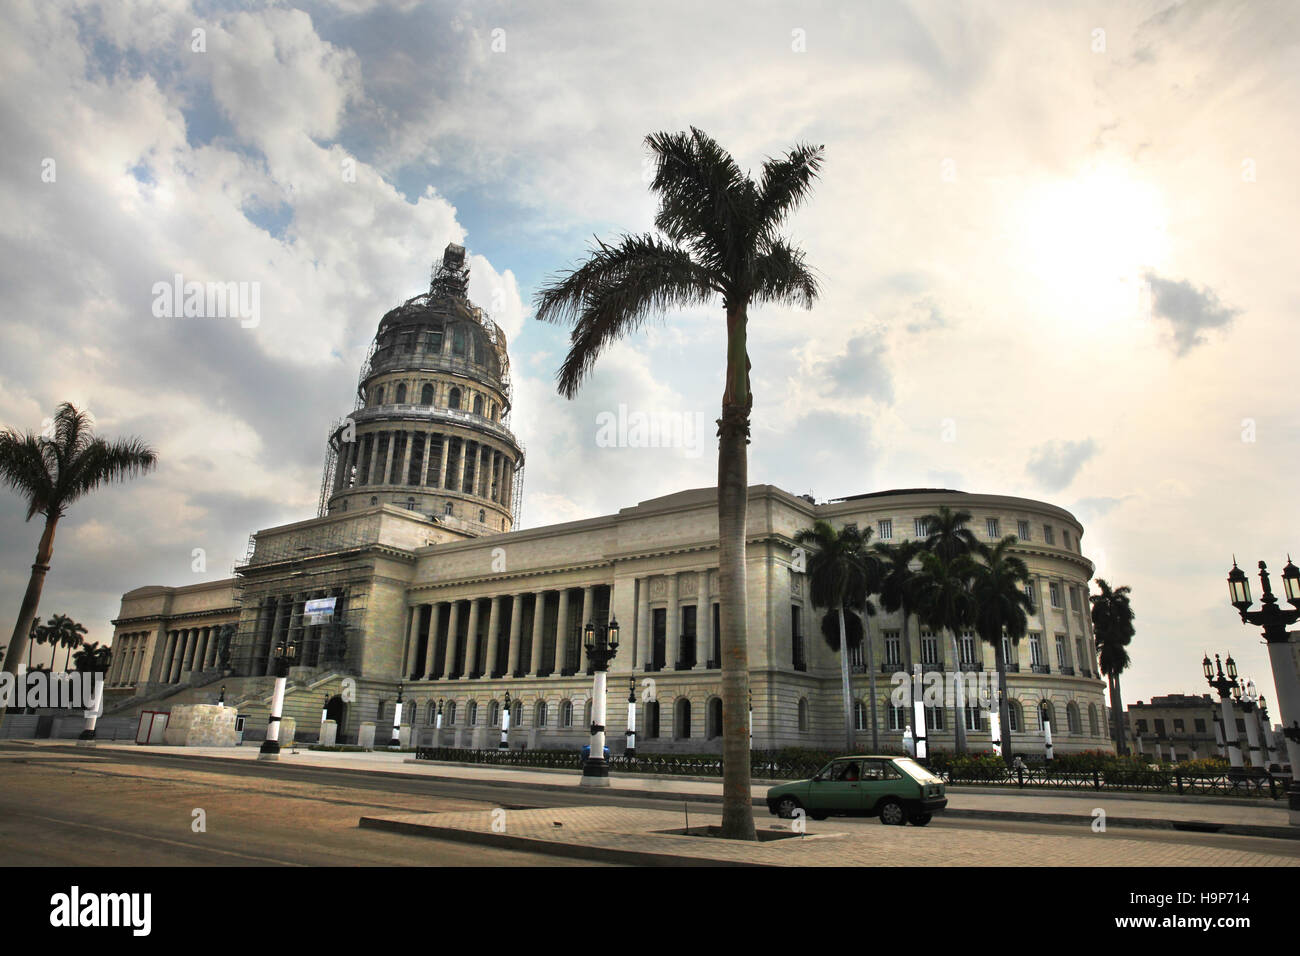 El Capitolio oder nationale Kapitol in Havanna, Kuba. Früher der Sitz der Regierung, jetzt kubanische Akademie der Wissenschaften. Stockfoto